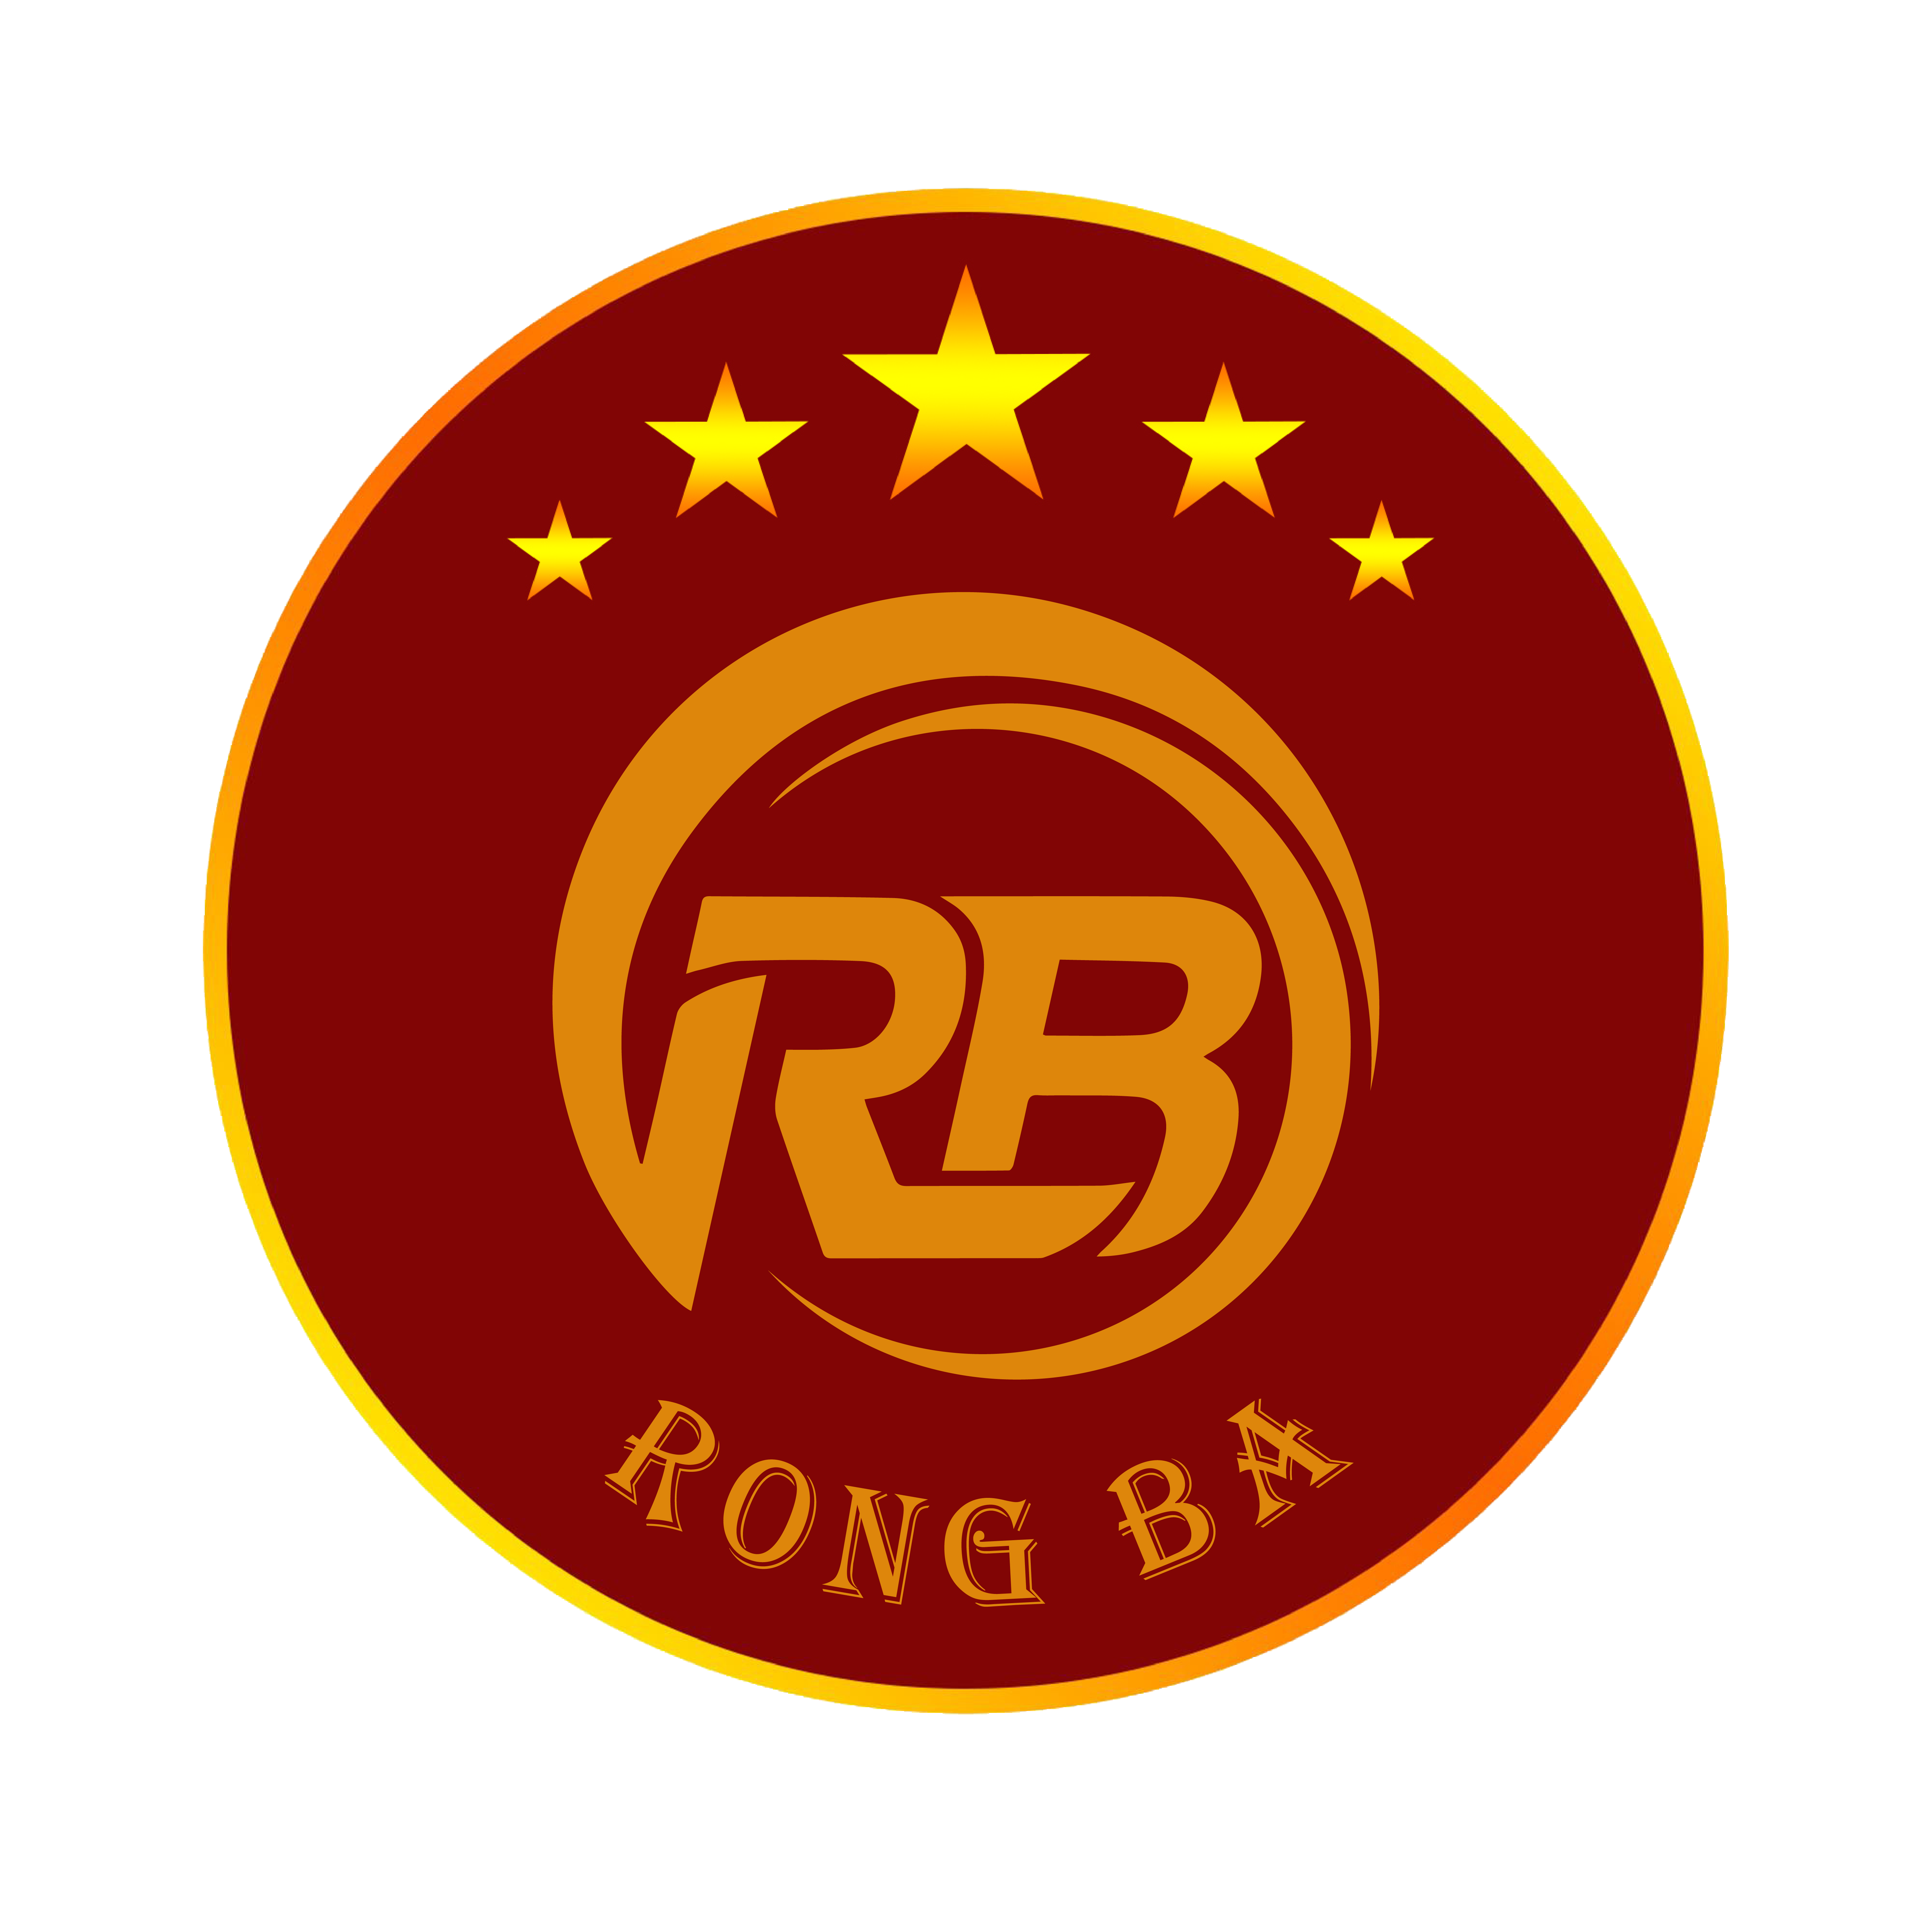 Rong Ba Group